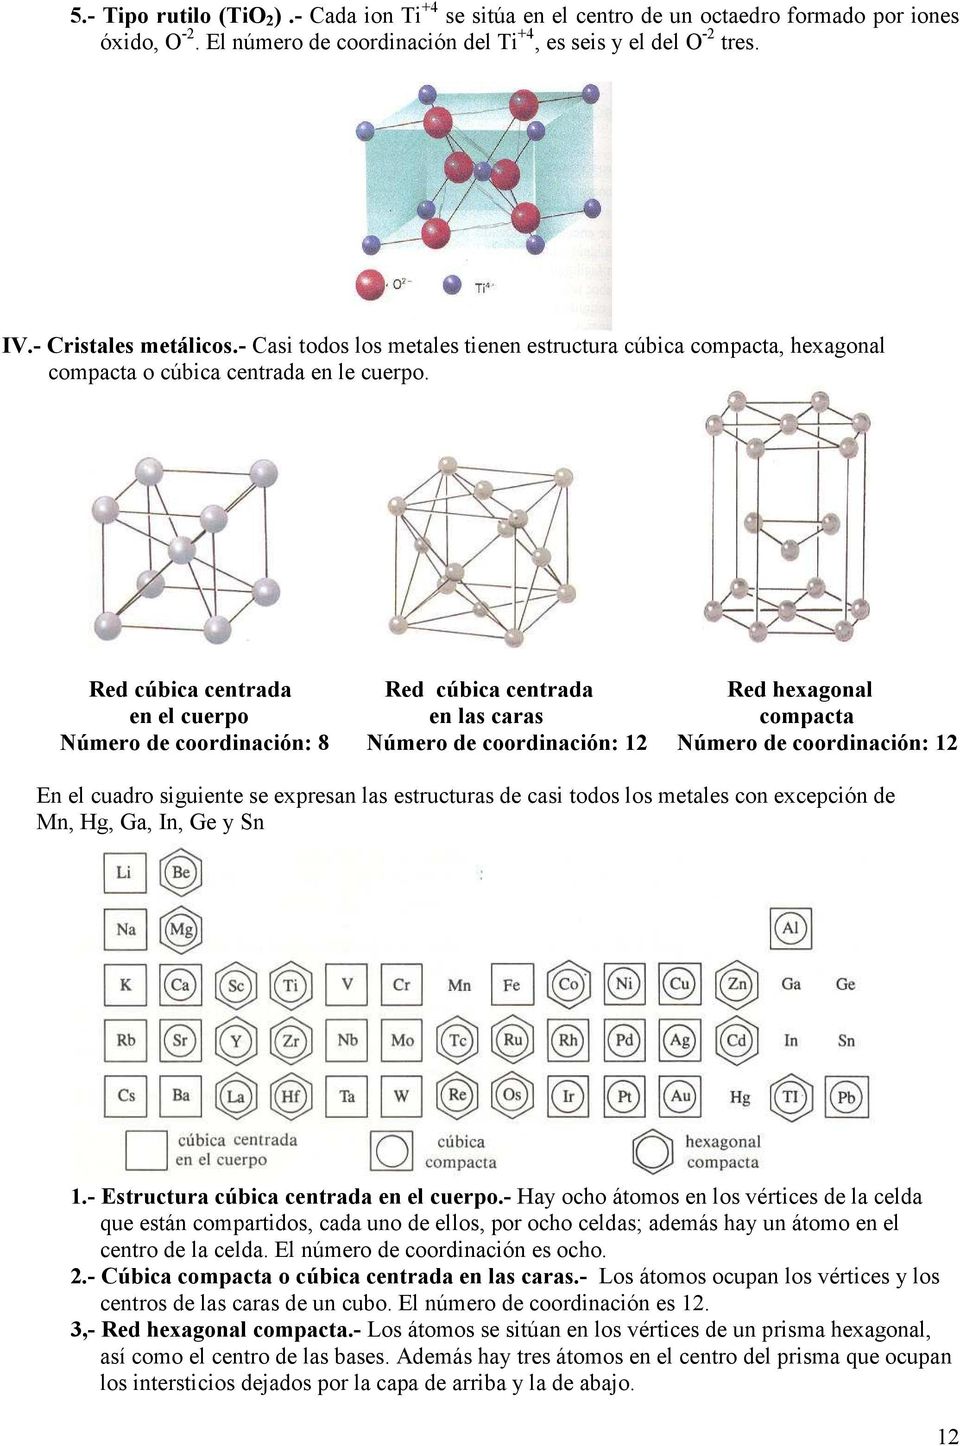 Red cúbica centrada Red cúbica centrada Red hexagonal en el cuerpo en las caras compacta Número de coordinación: 8 Número de coordinación: 12 Número de coordinación: 12 En el cuadro siguiente se